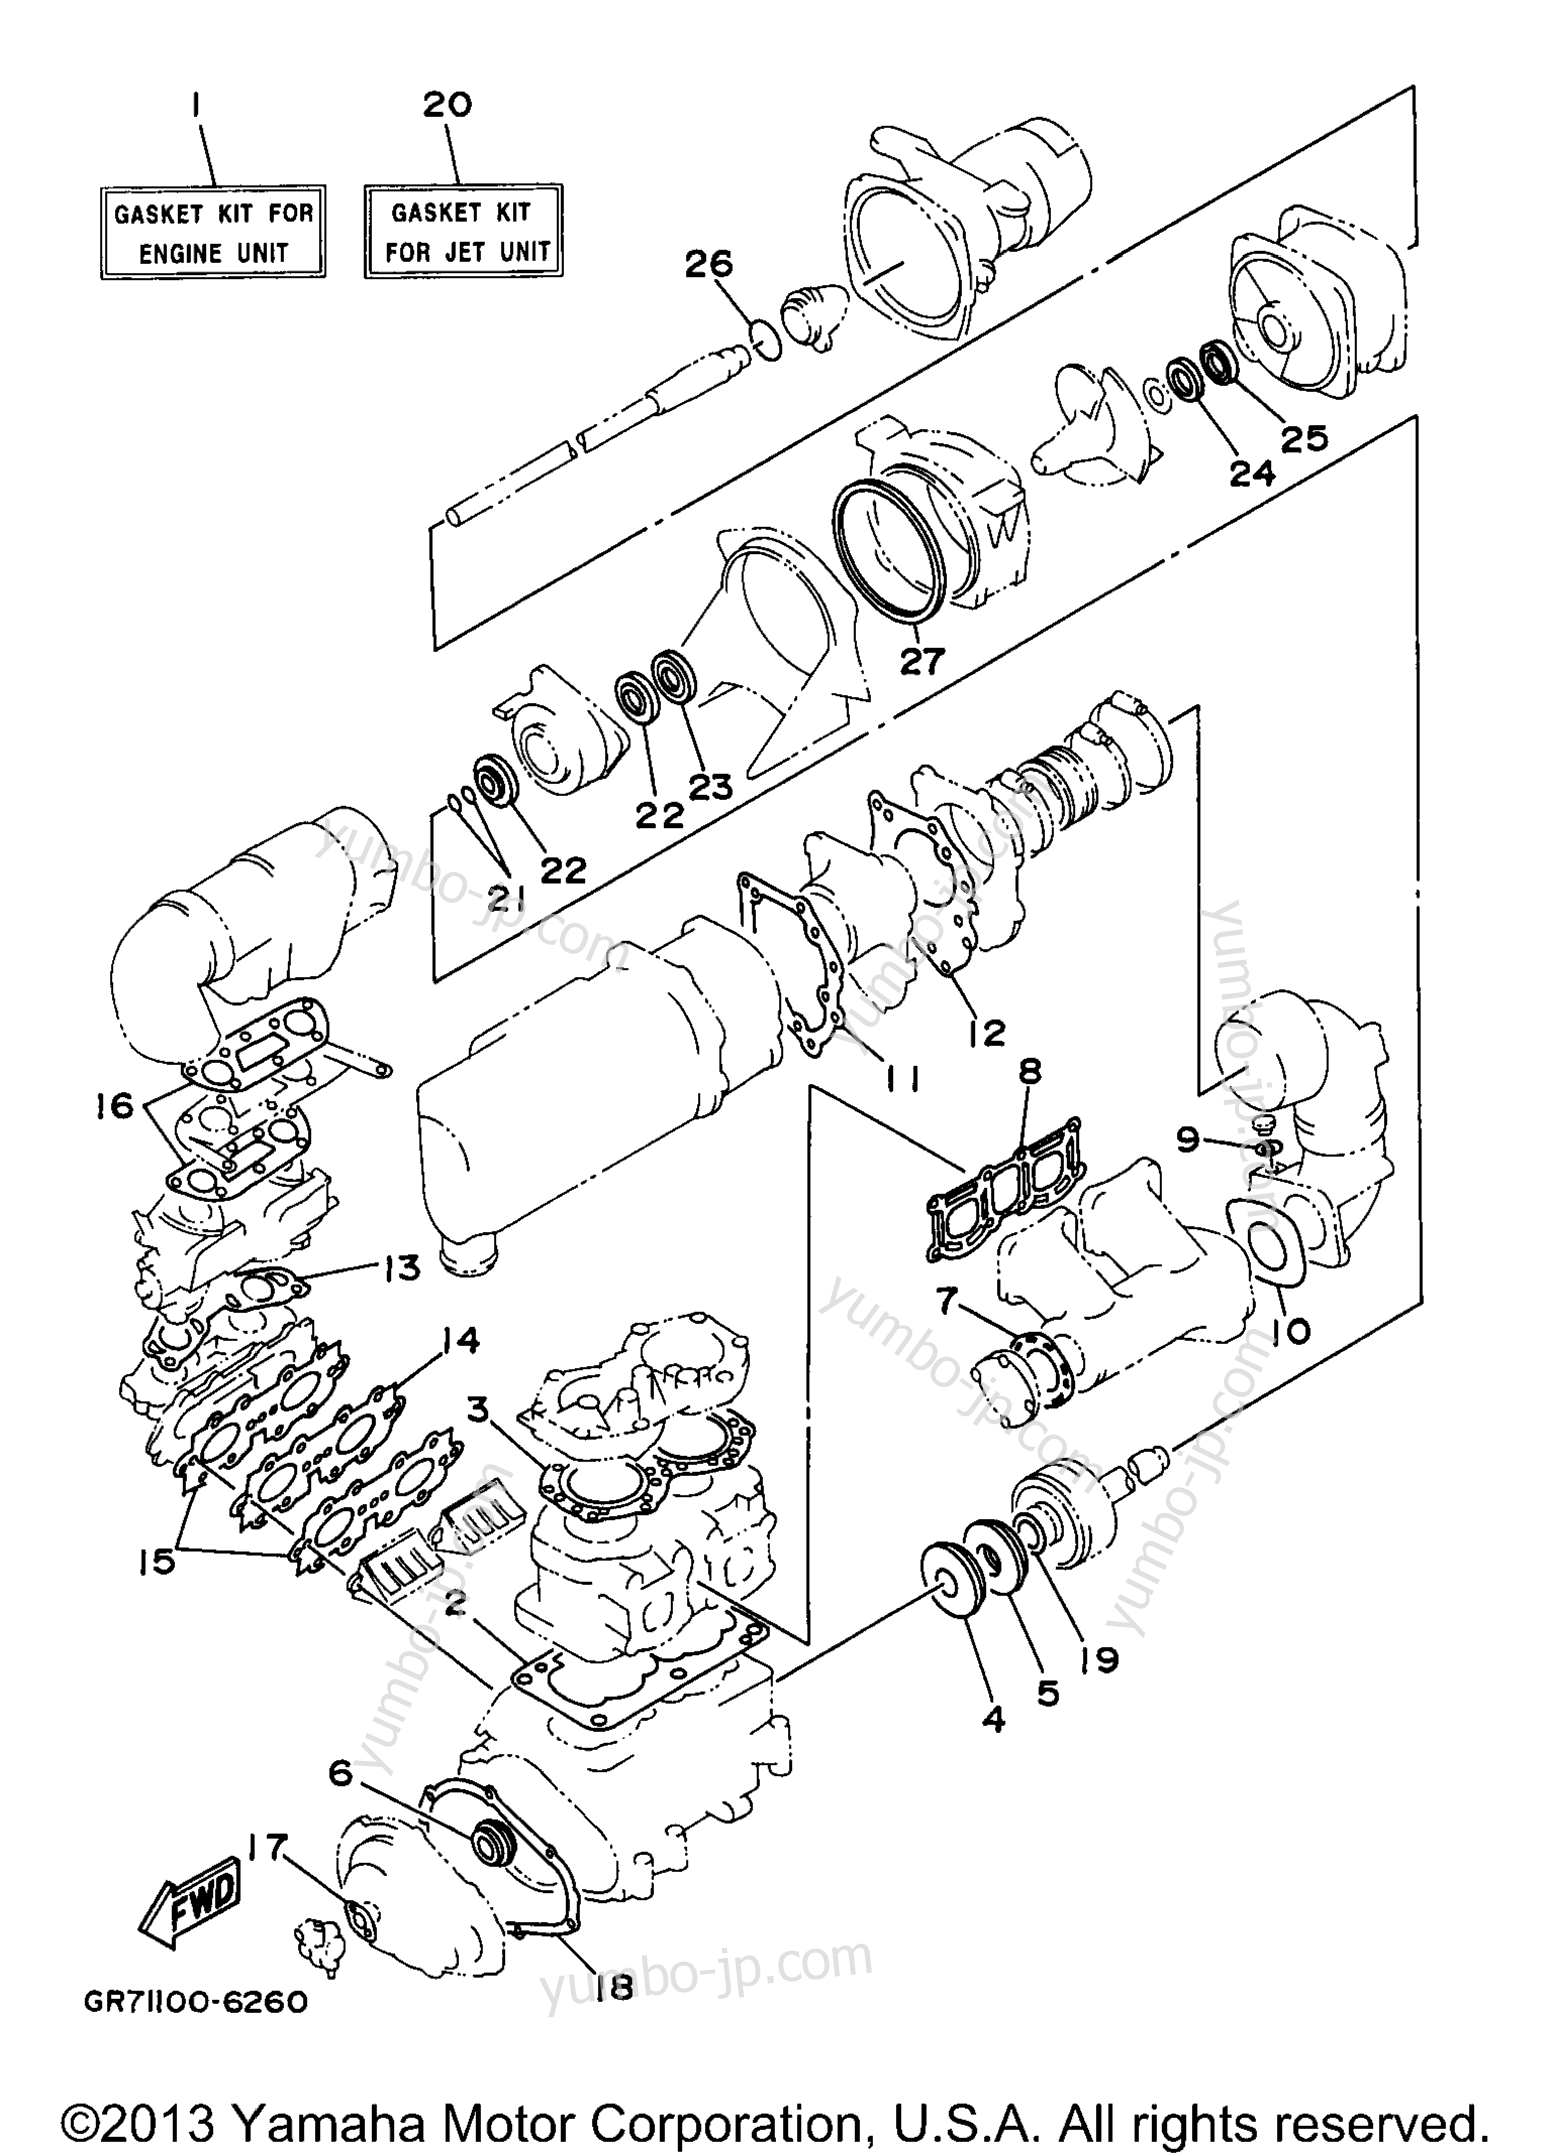 Repair Kit 1 для гидроциклов YAMAHA SUPER JET (SJ700AW) 1998 г.